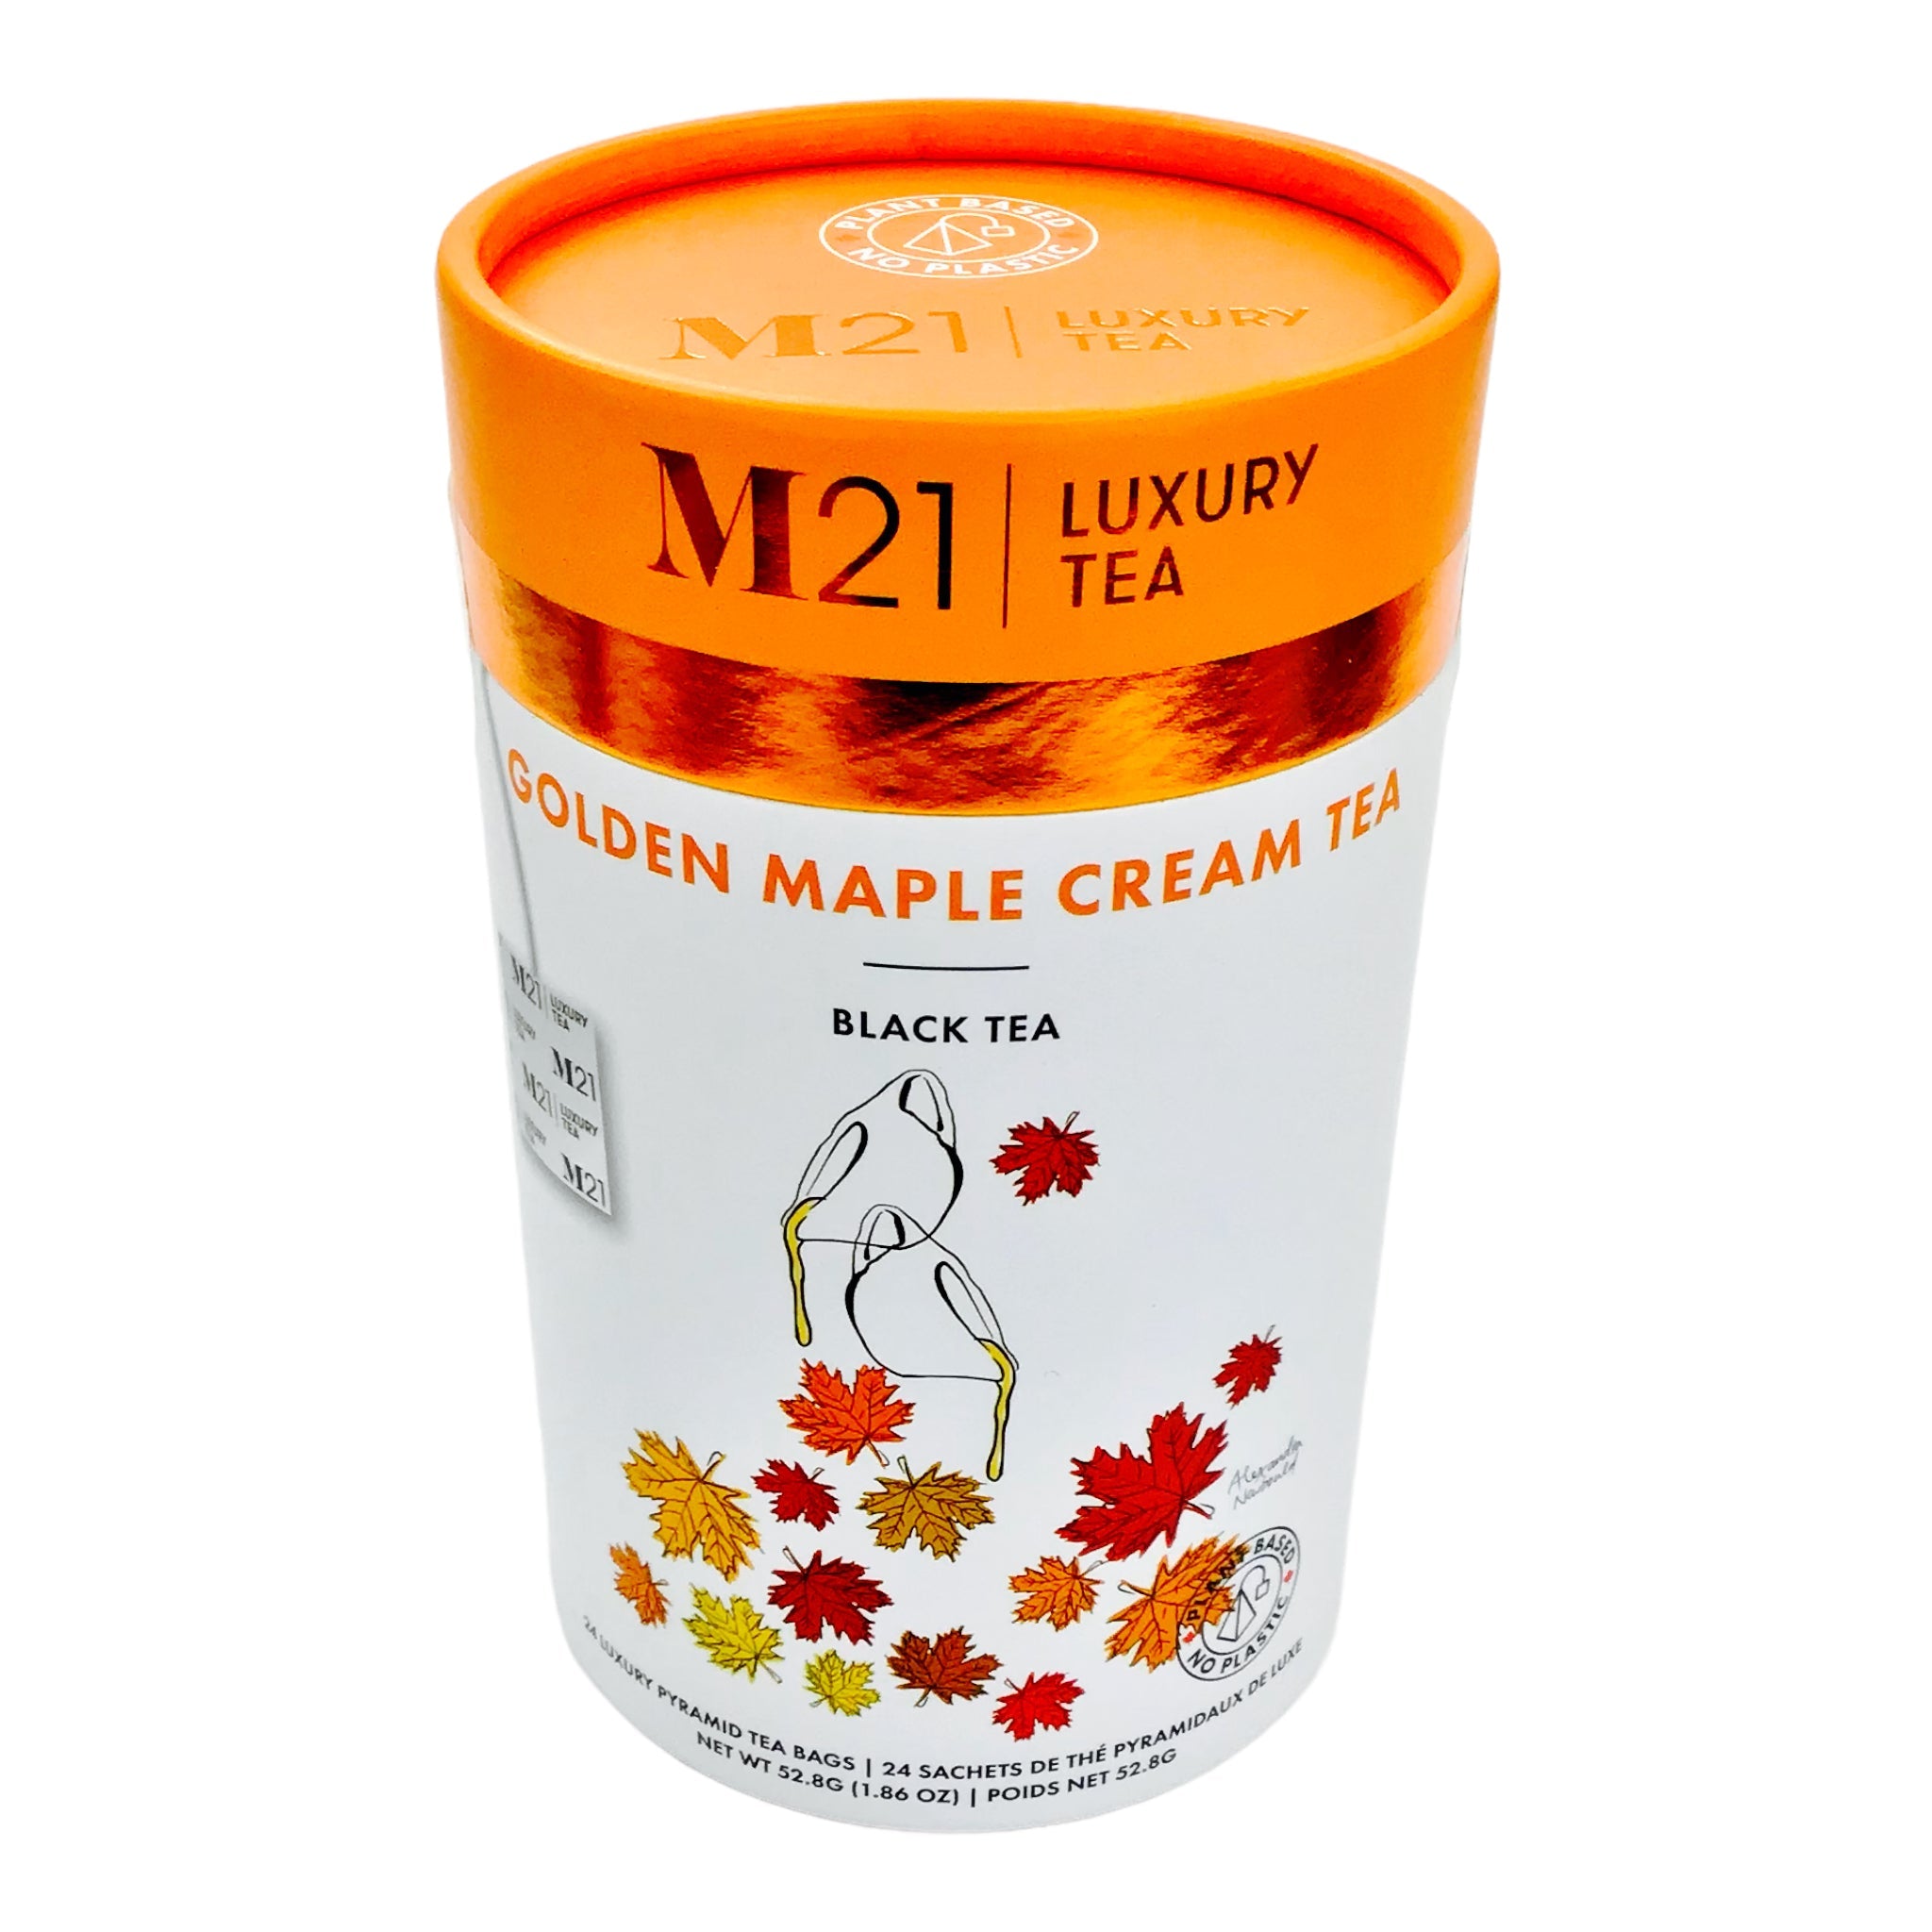 CANADA GOLDEN MAPLE CREAM TEA | M21 LUXURY TEA ( 24 TEA BAGS )